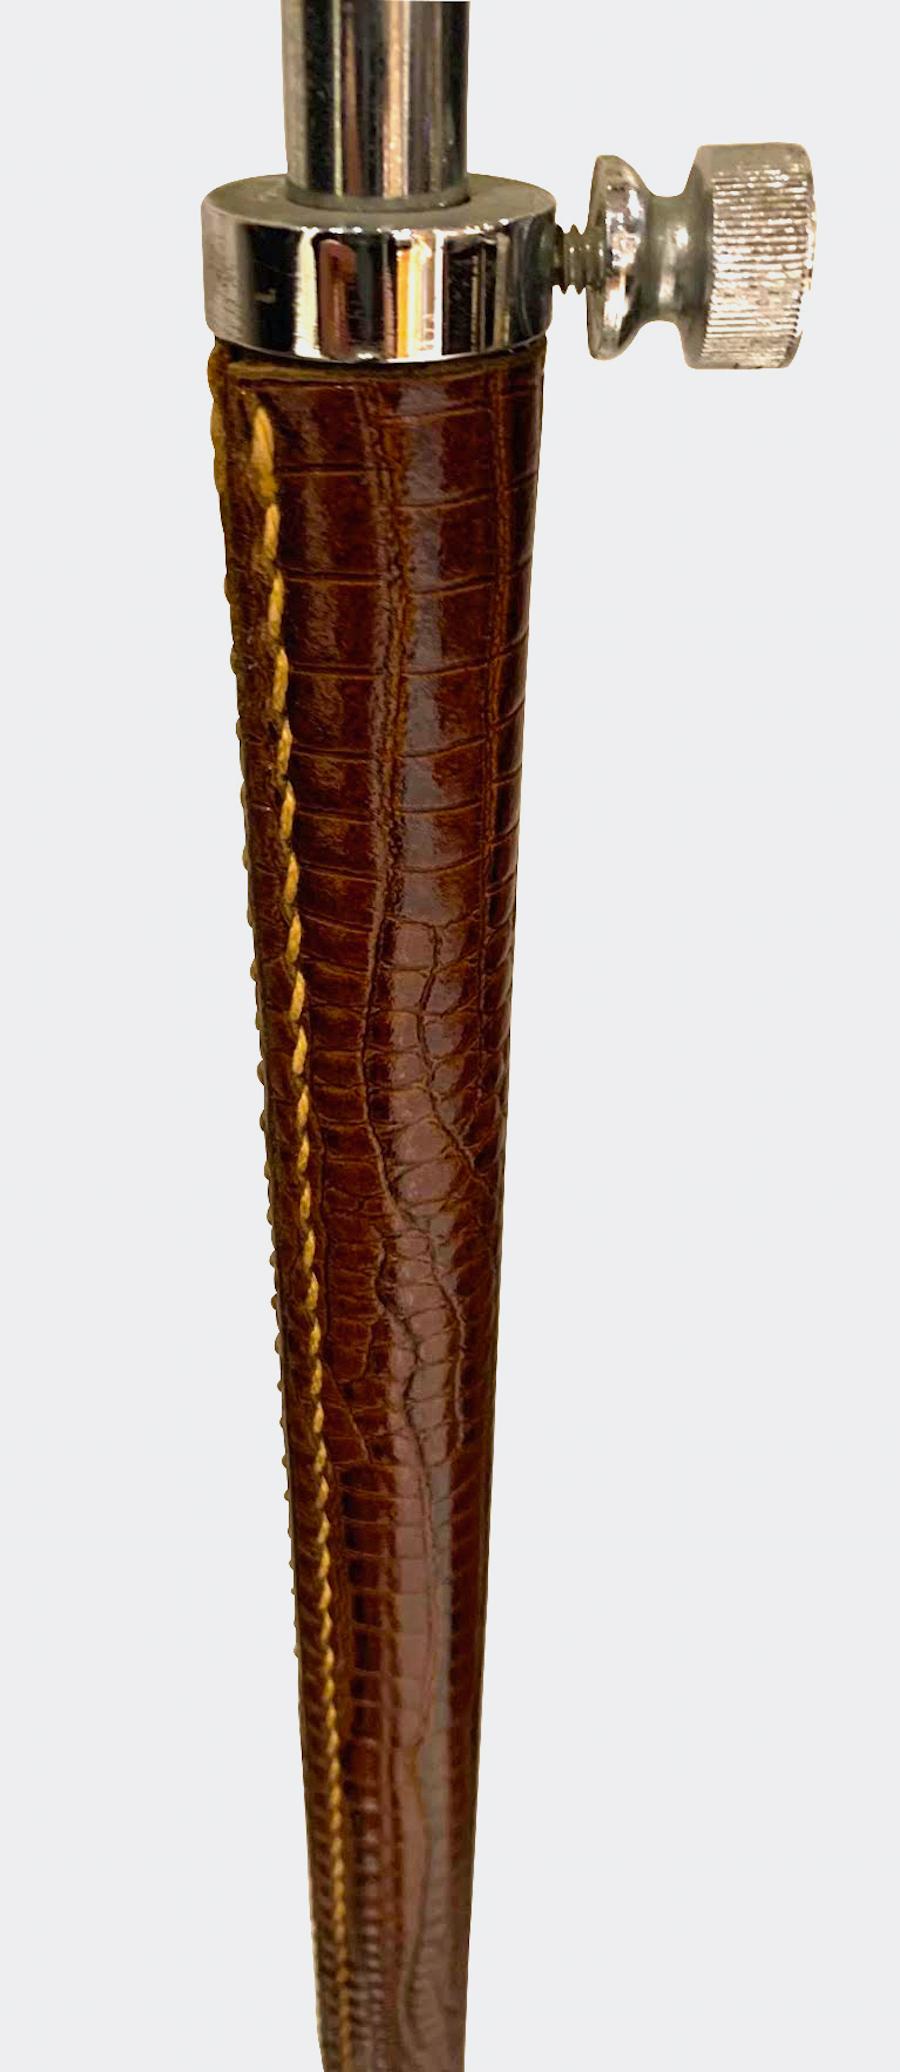 Lampadaire espagnol des années 1960, entièrement gaufré en faux alligator brun.
Hauteur de l'appareil 44